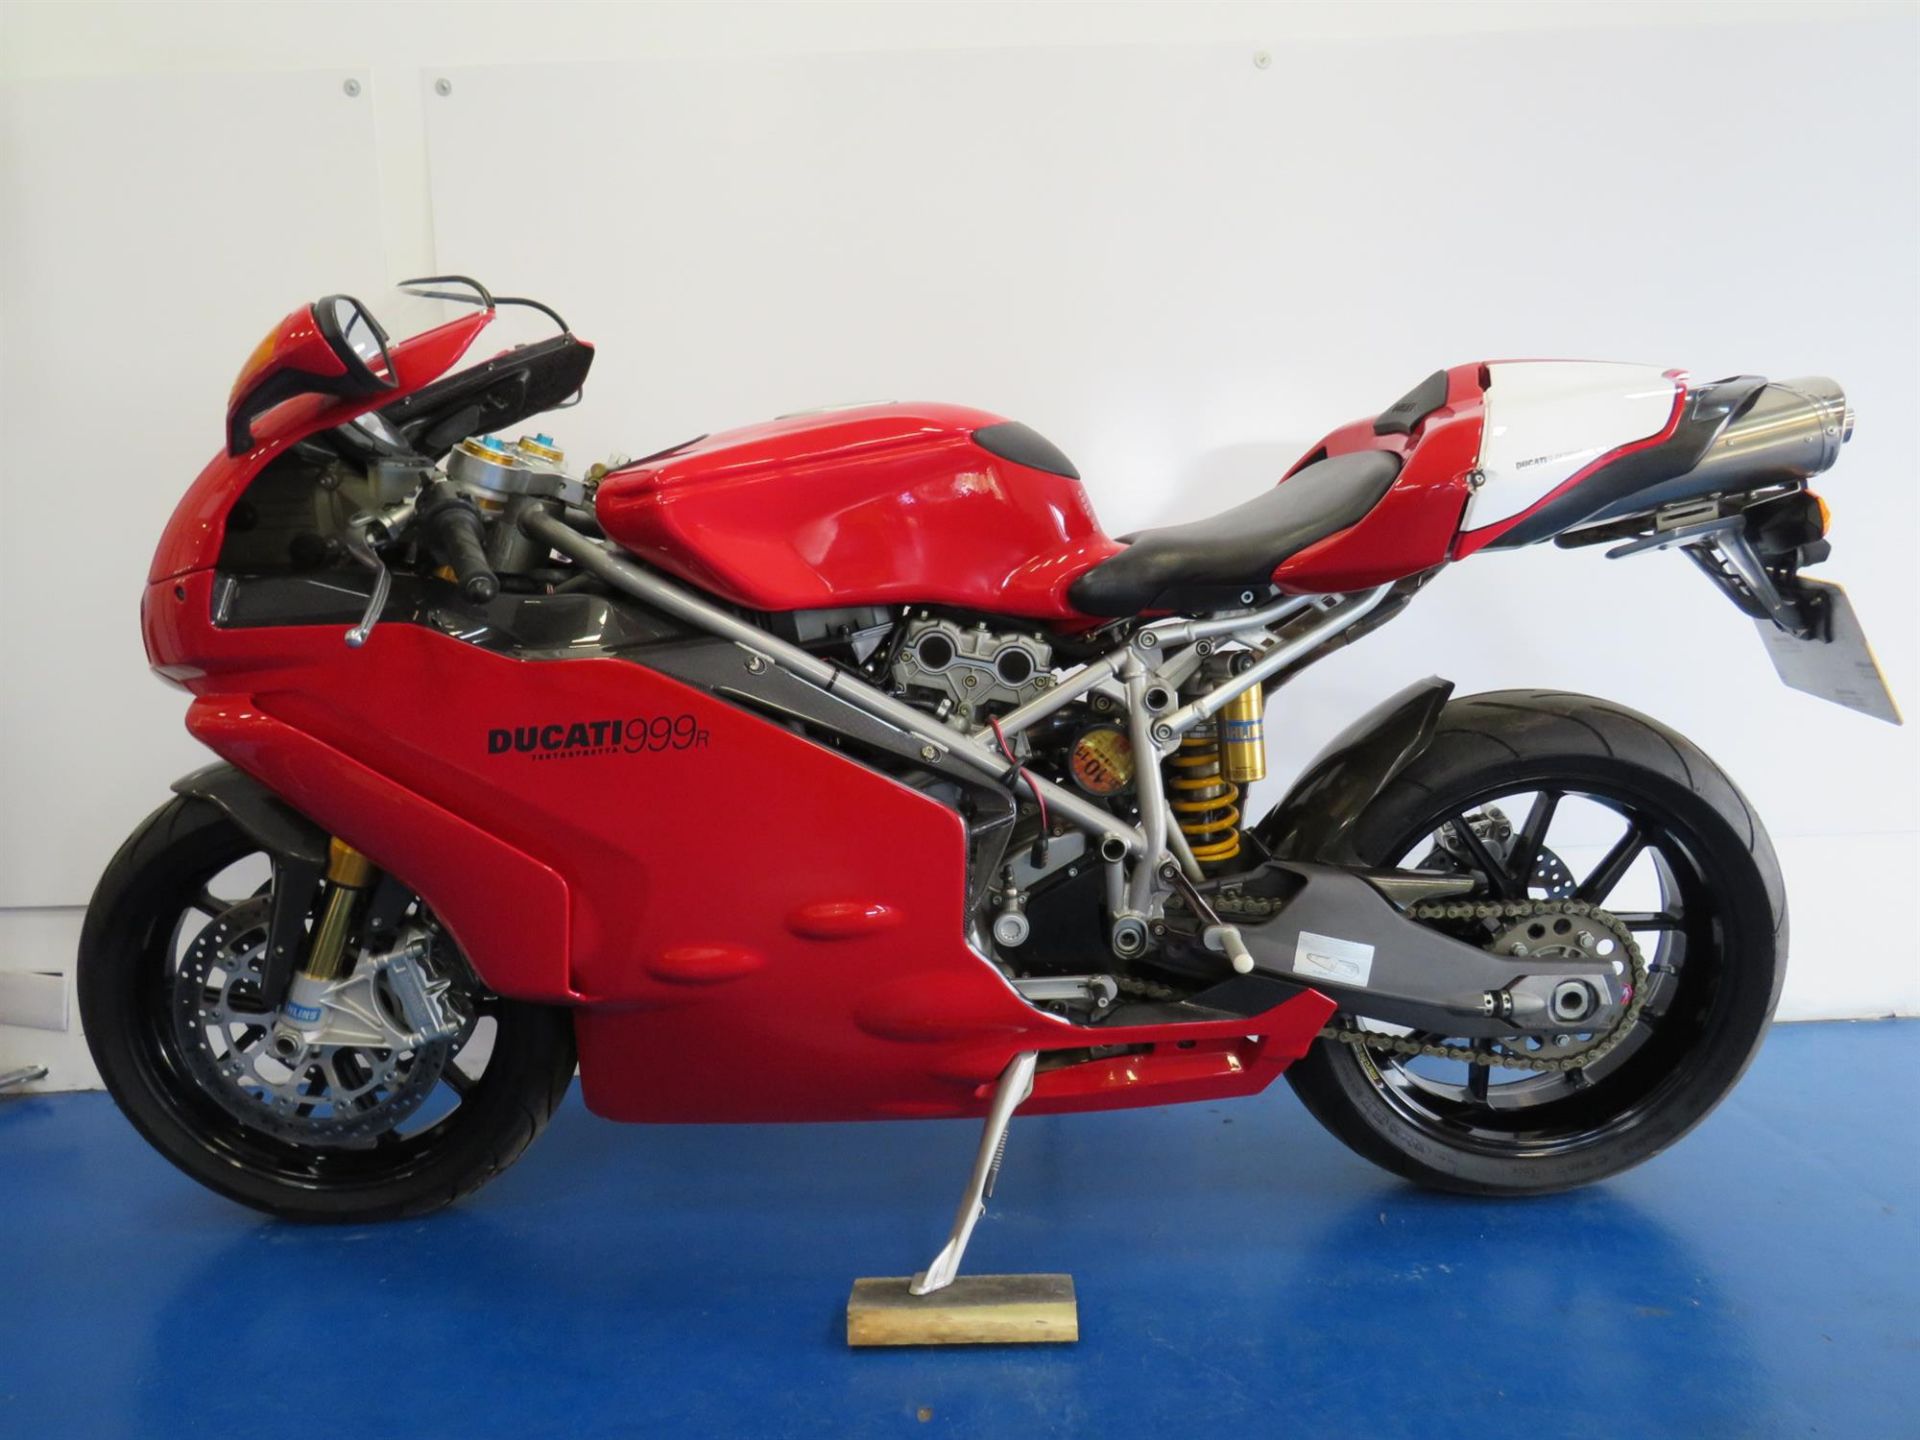 2003 Ducati 999R 999cc - Image 2 of 10